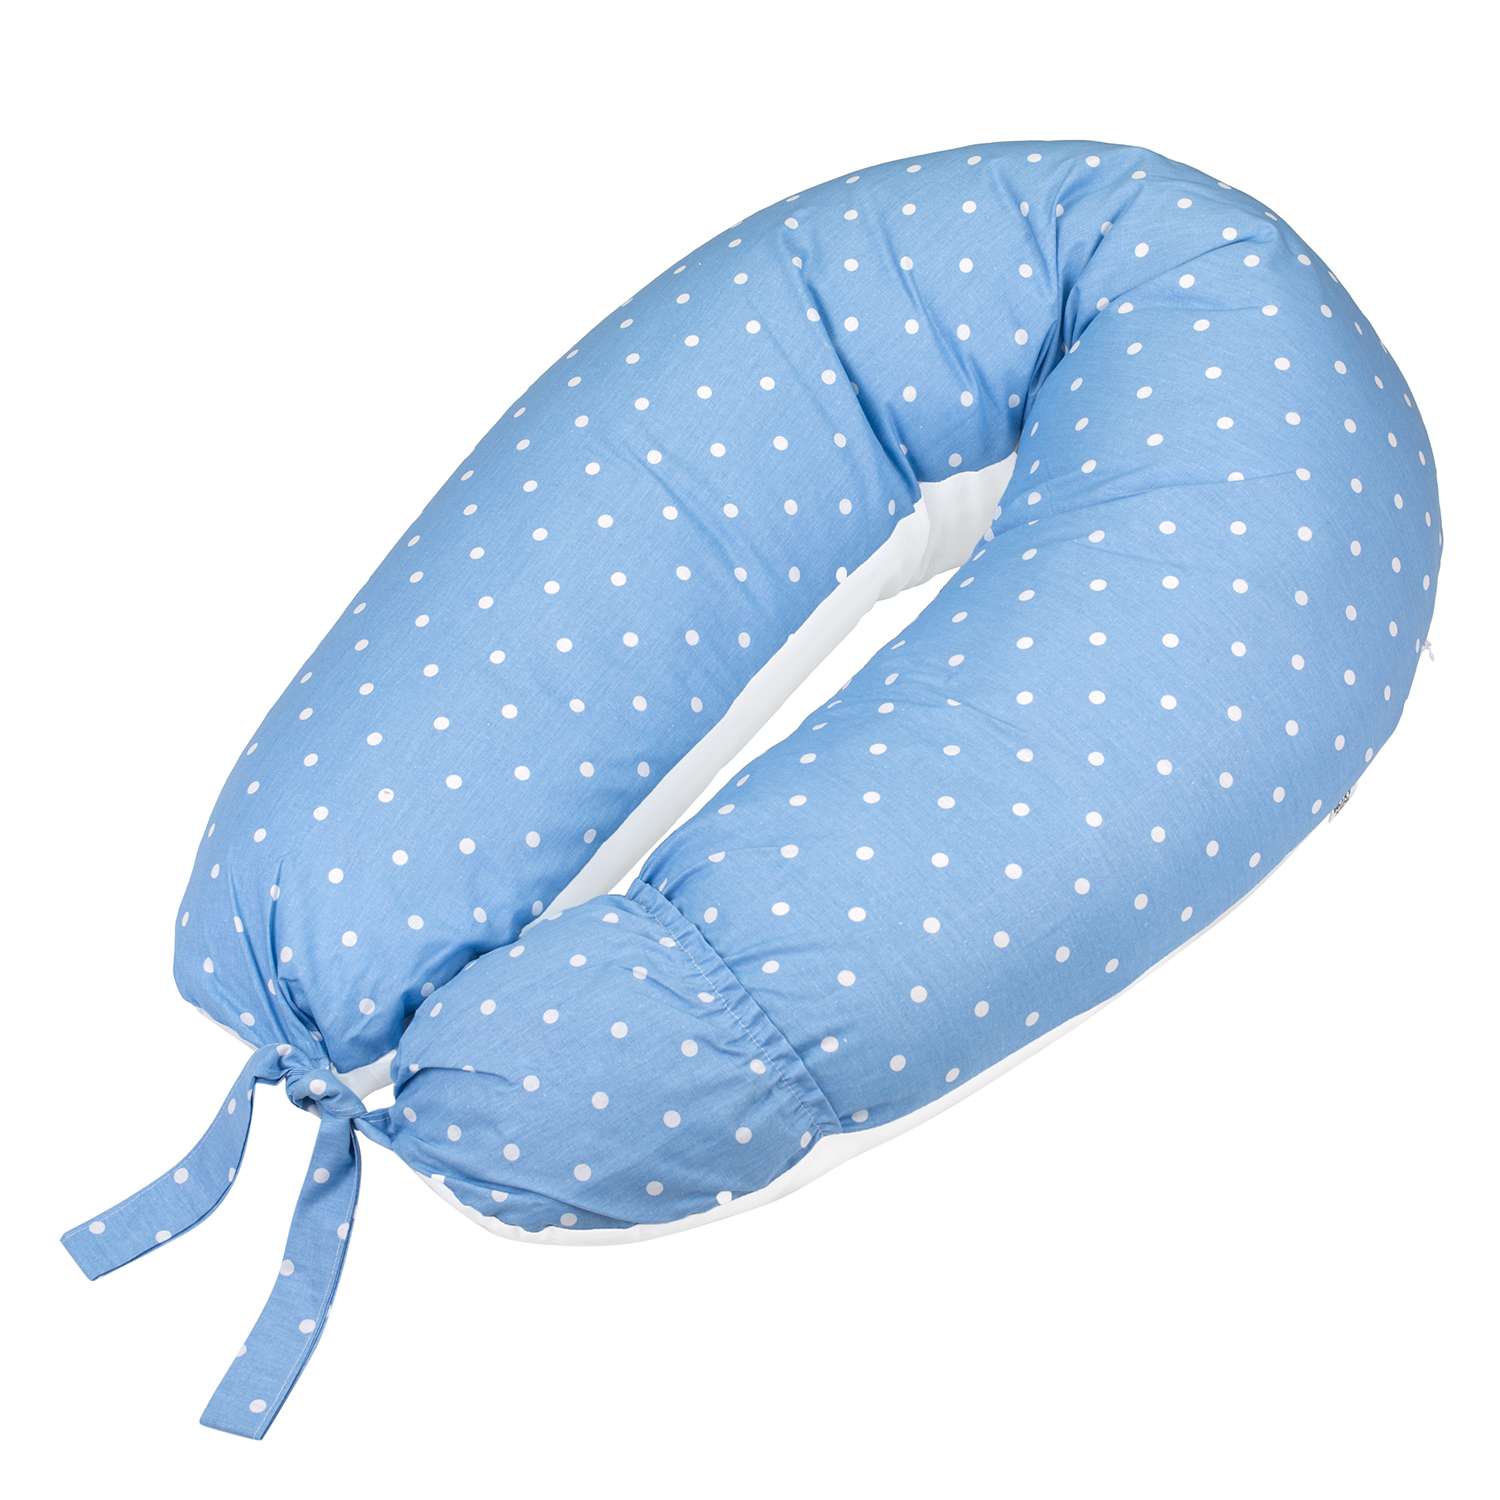 Подушка для беременных ROXY-KIDS U-образная Премиум цвет синий в белый горох - фото 1